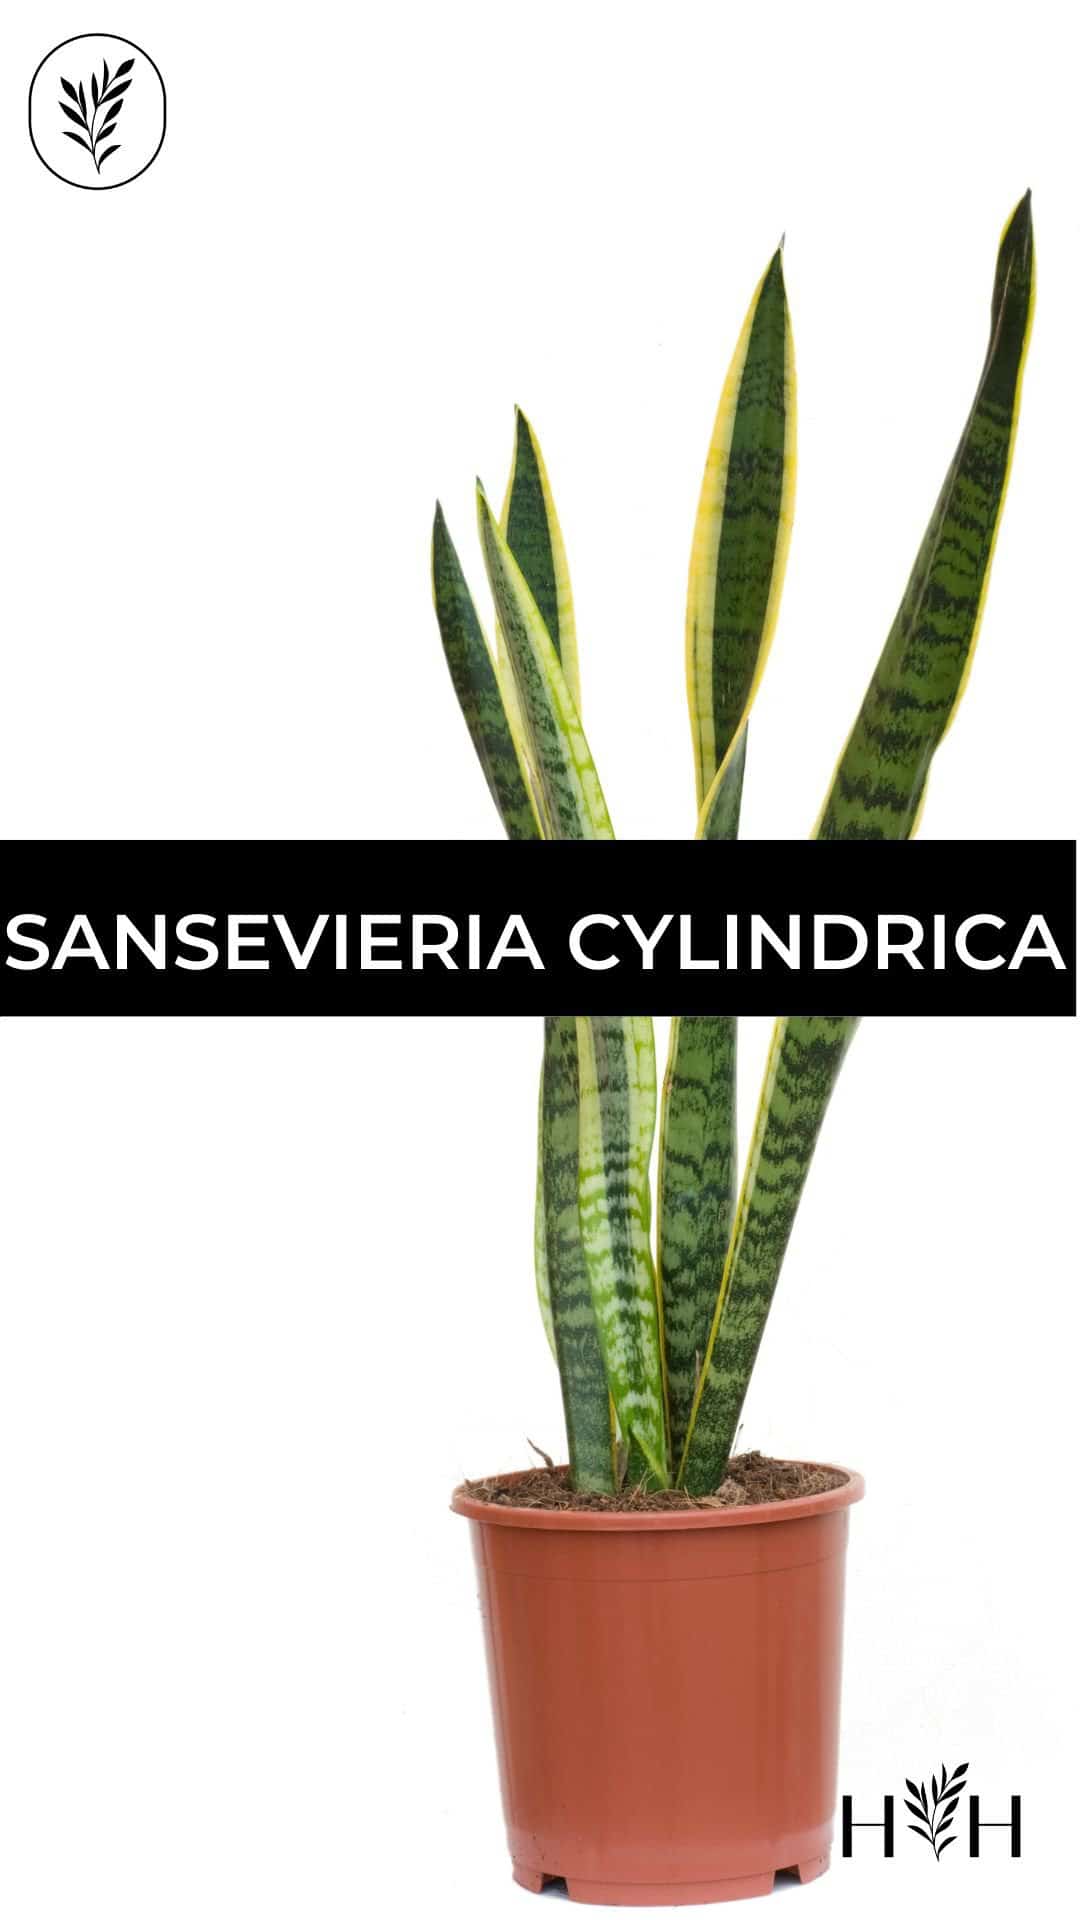 Sansevieria cylindrica via @home4theharvest